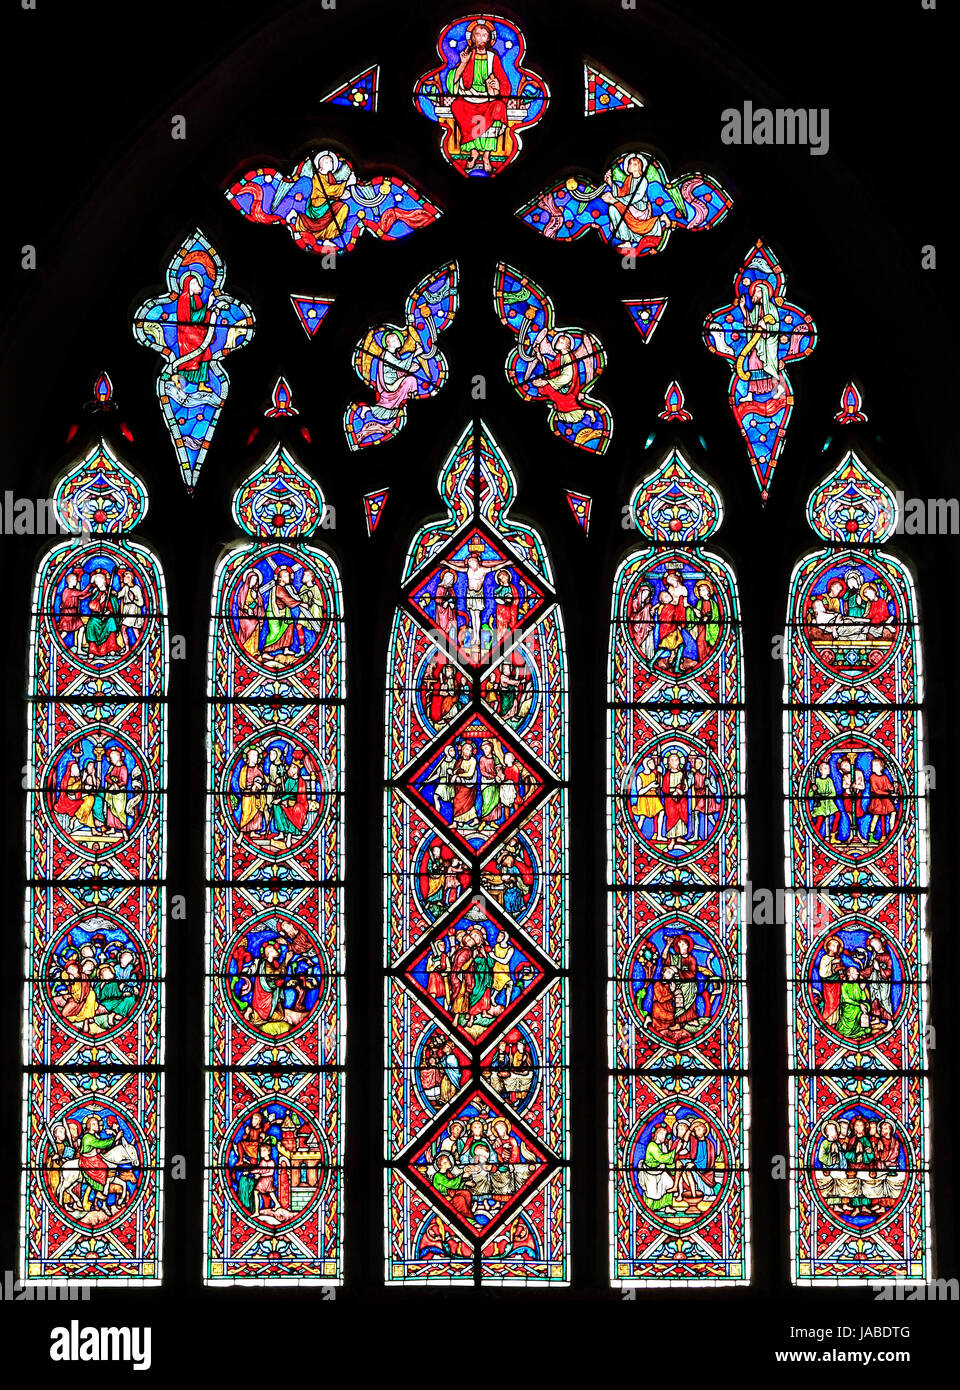 La passione, la finestra scene della passione, vetrata, da Adolph Didron di Parigi, 1860 Feltwell Chiesa, Norfolk, Inghilterra, Regno Unito, la storia di Pasqua Foto Stock